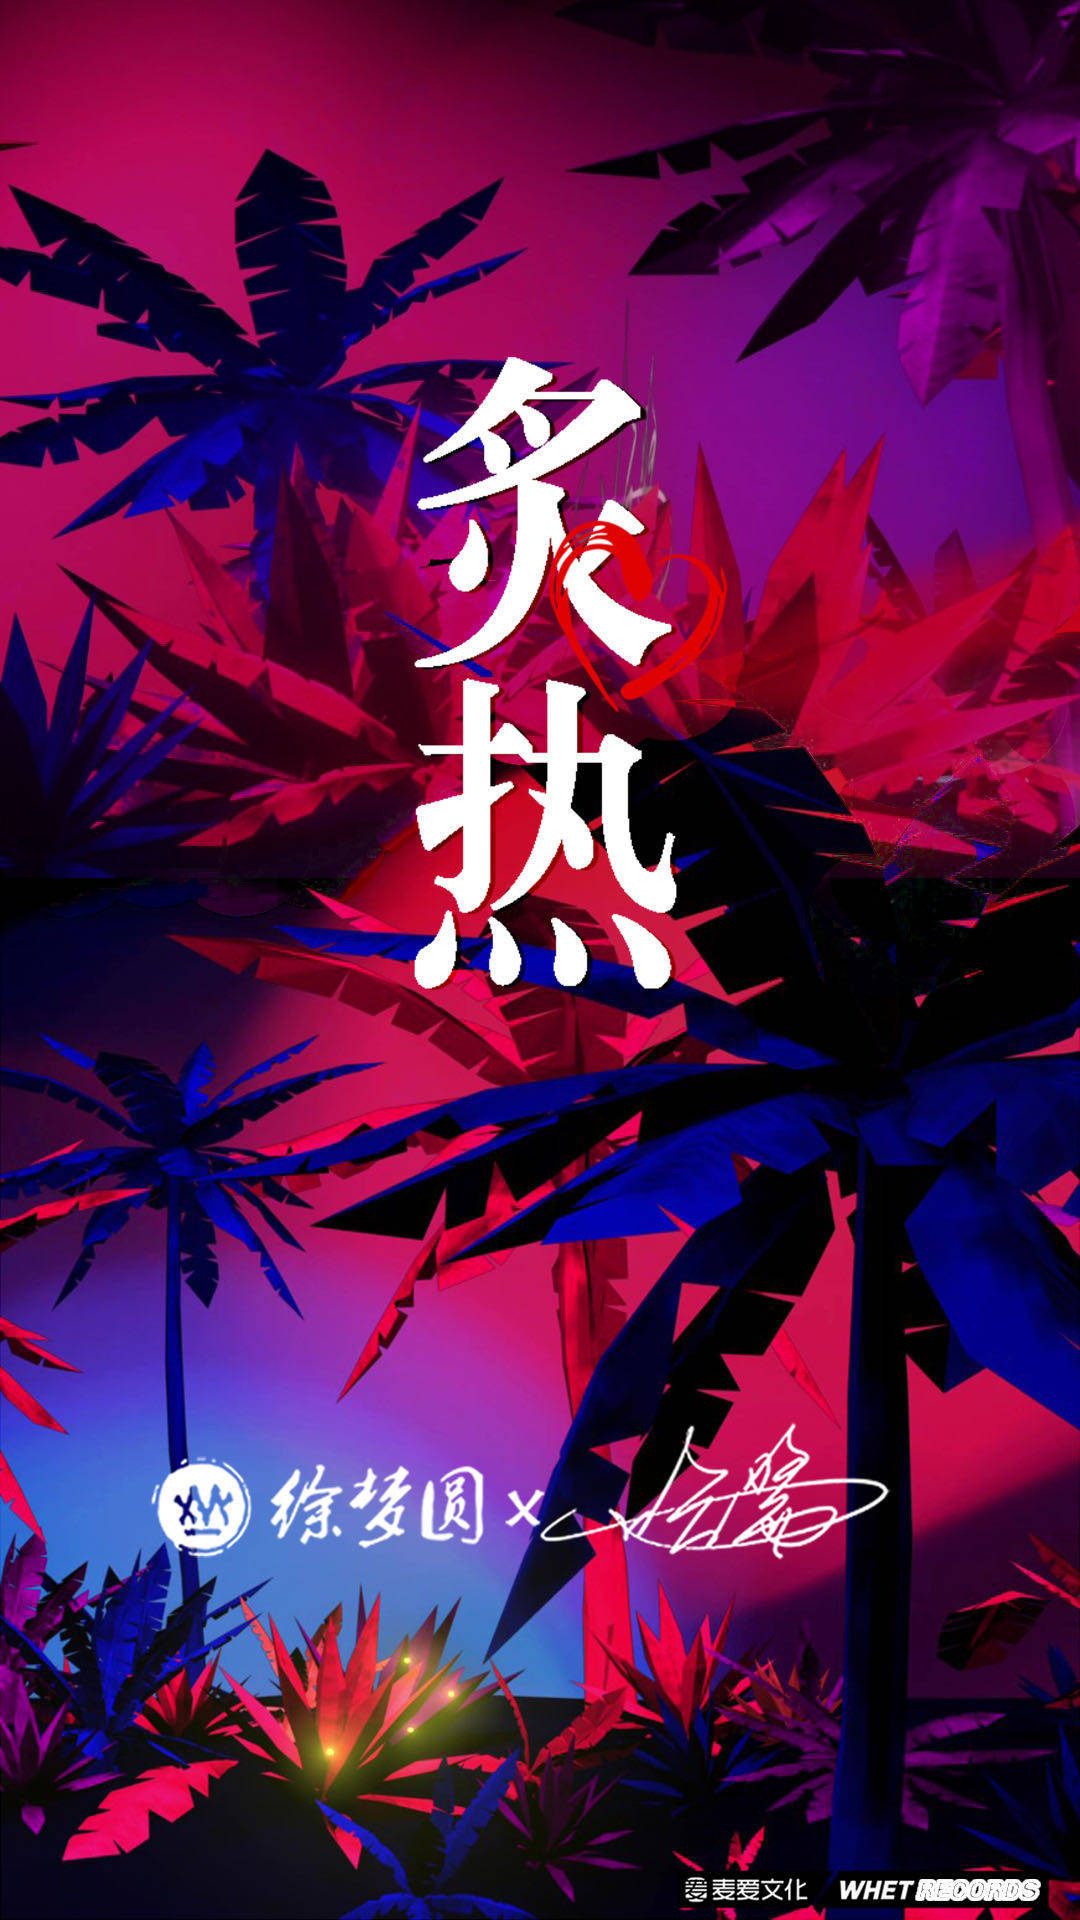 ‎Apple Music 上徐梦圆的专辑《China-E - Single》